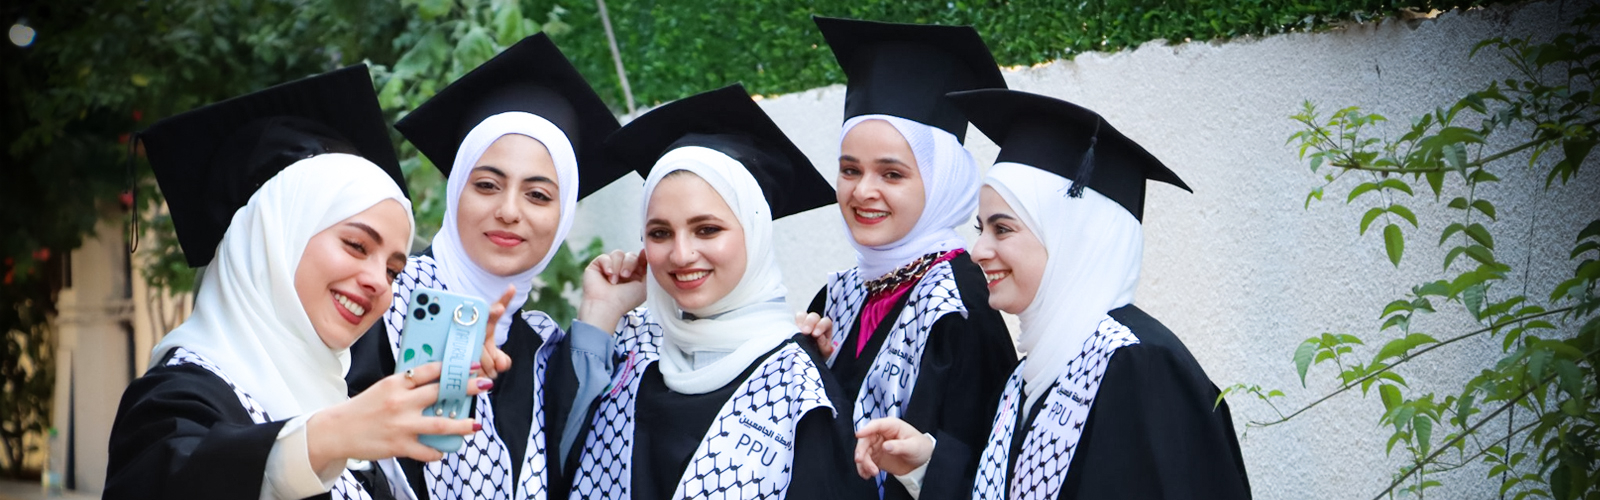 Palestine Polytechnic University (PPU) - جامعة بوليتكنك فلسطين تحتفل بتخريج الفوج الحادي والأربعين من طلبة الماجستير والبكالوريوس